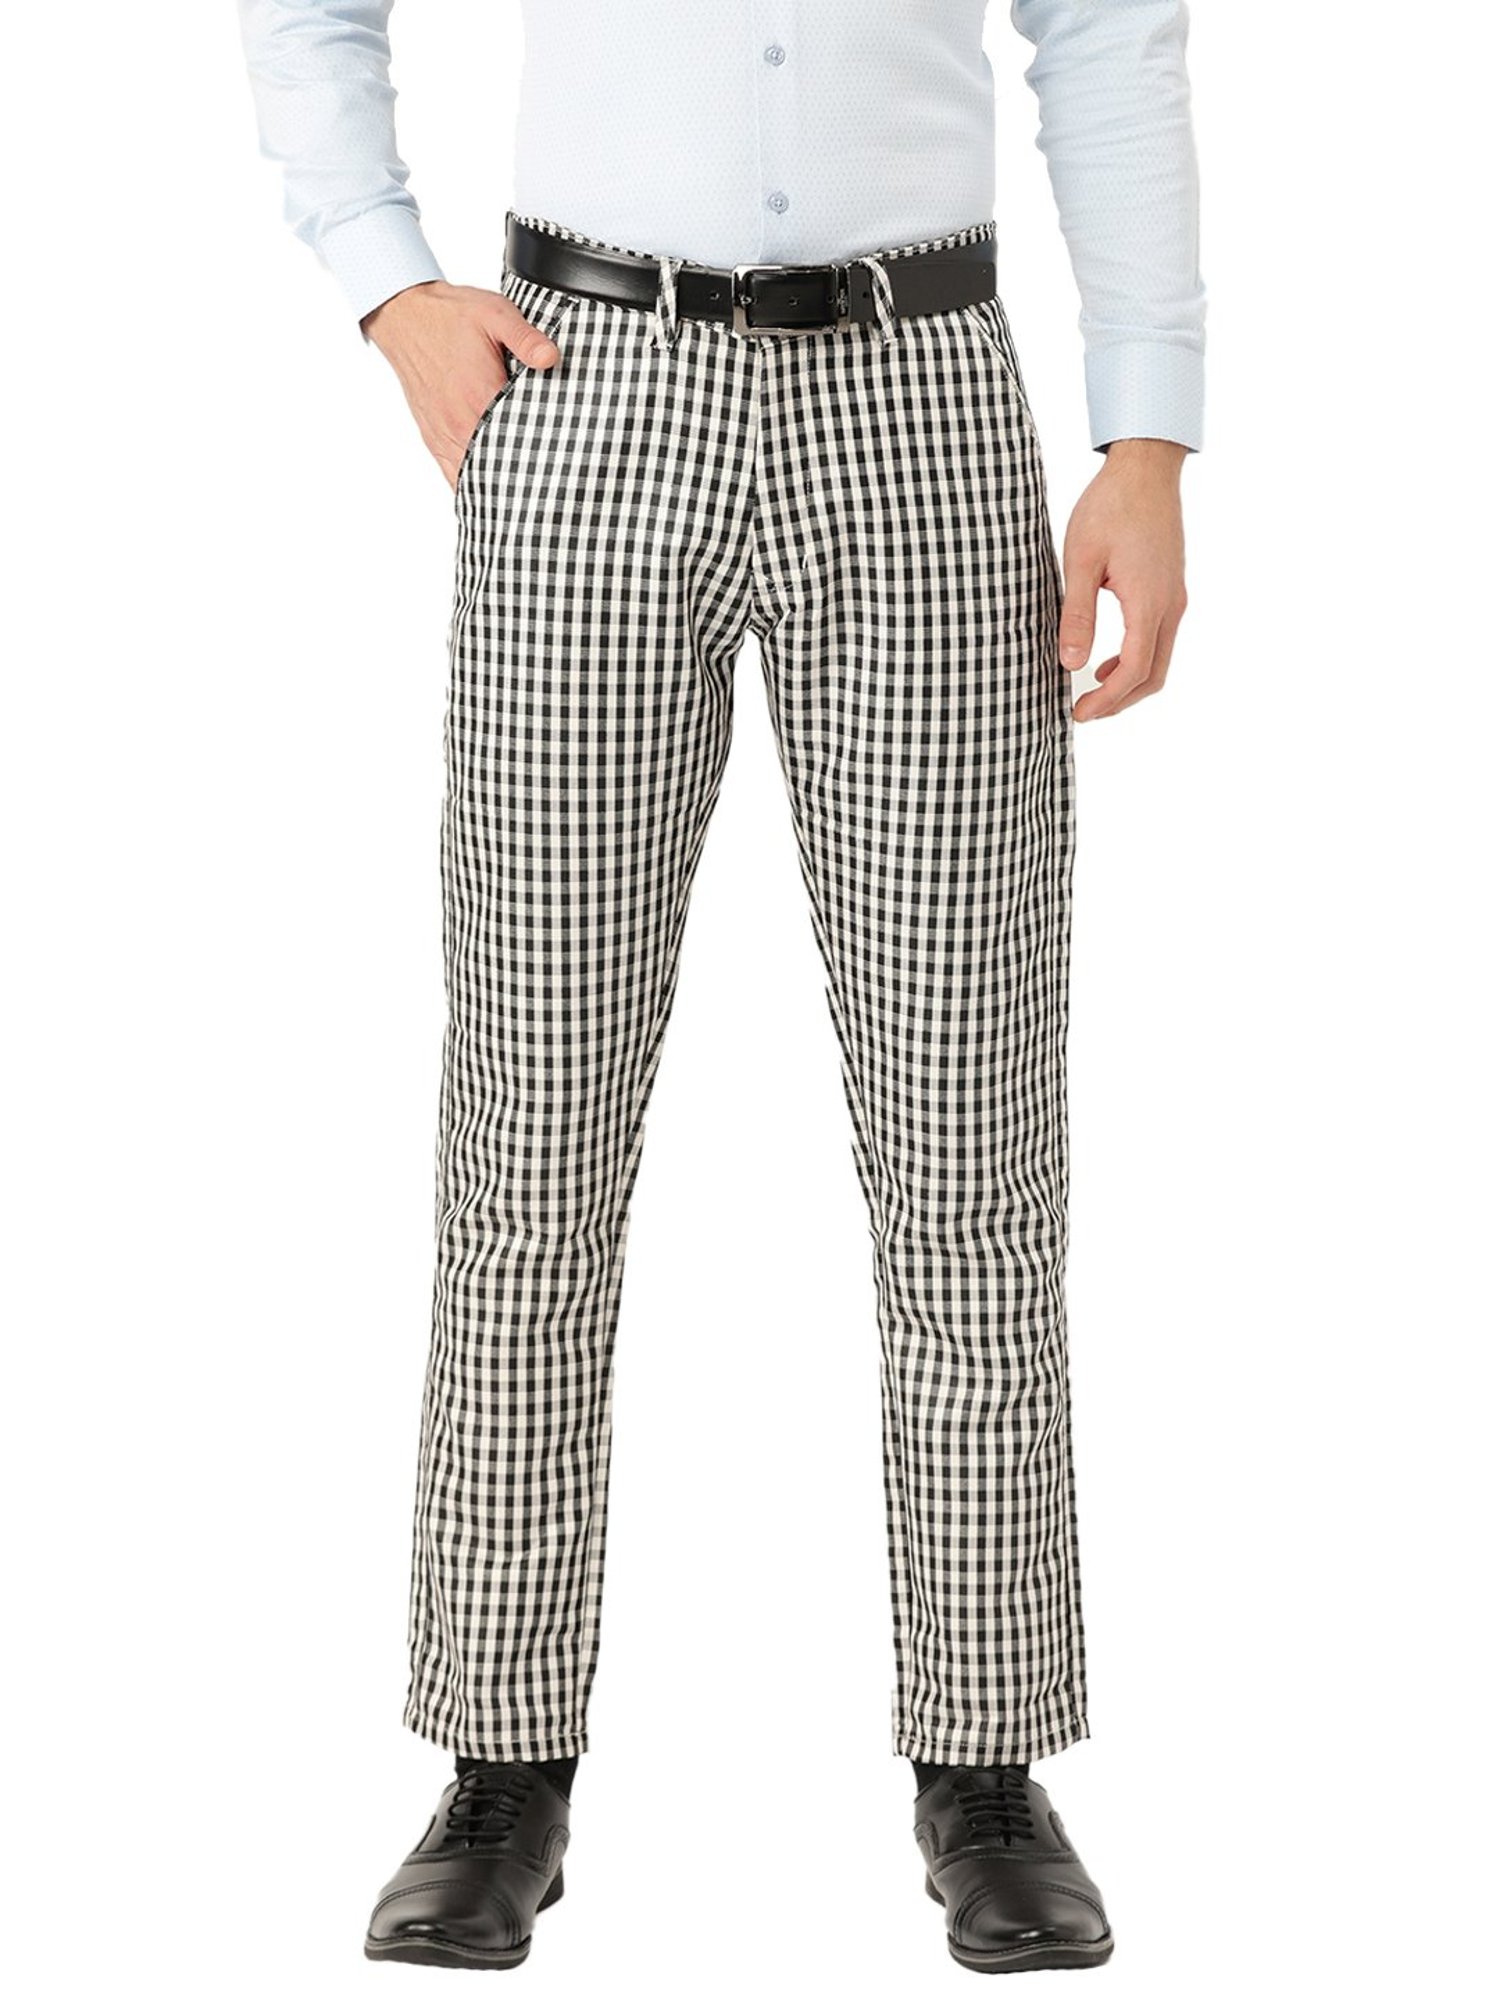 Buy Sojanya Black  White Checks Trousers for Men Online  Tata CLiQ